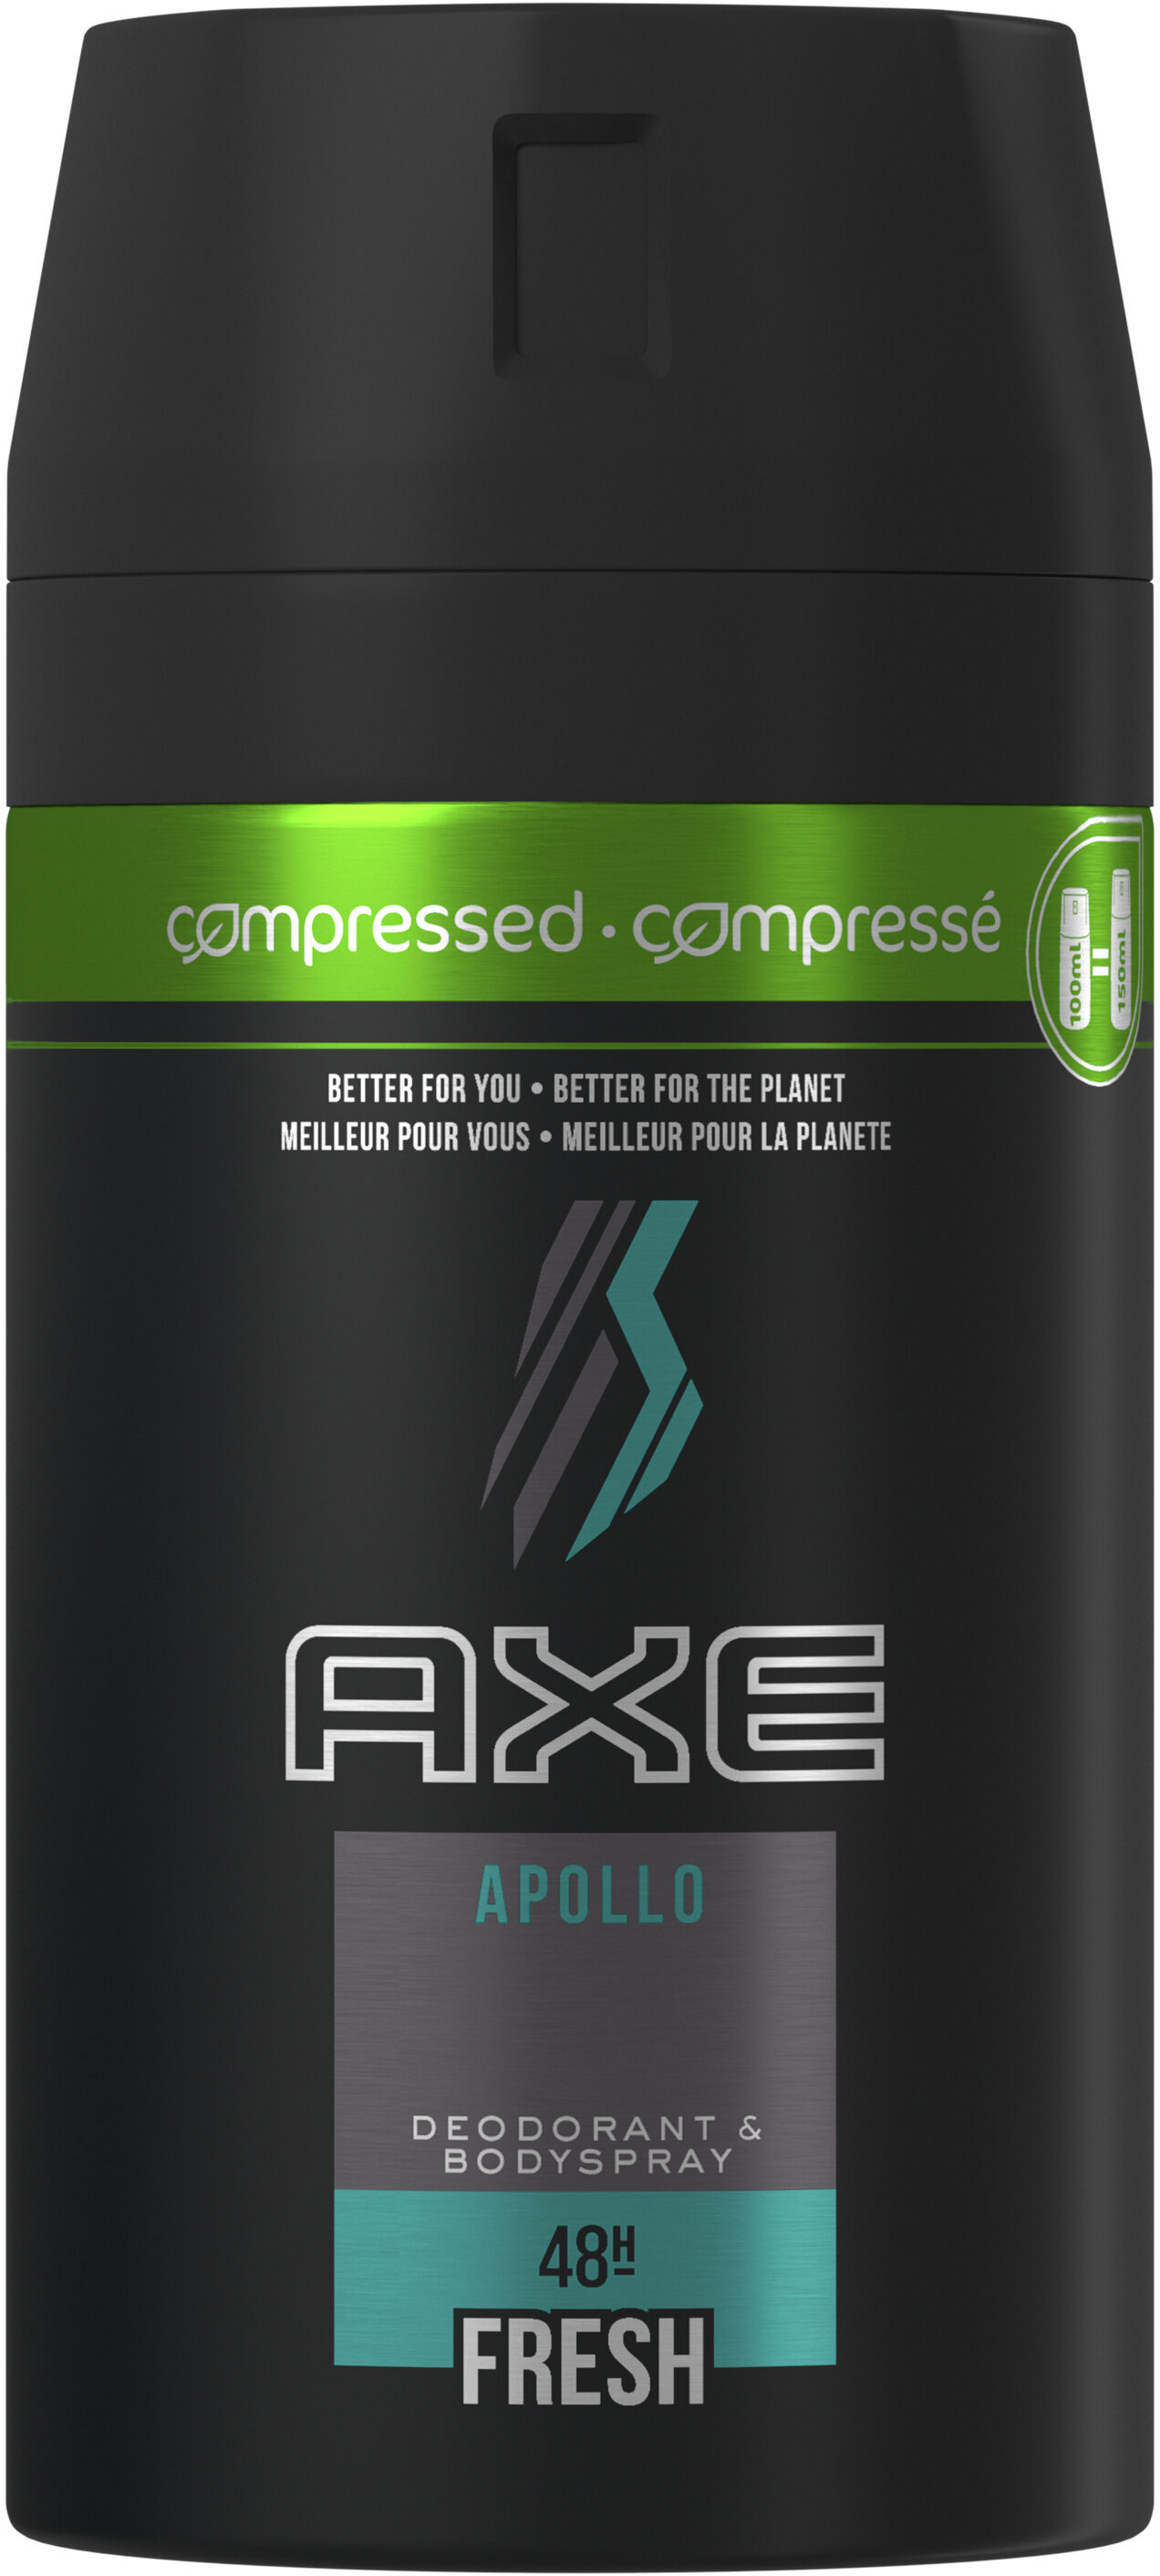 AXE Déodorant Homme Spray Compressé Apollo Frais 48h - Product - fr